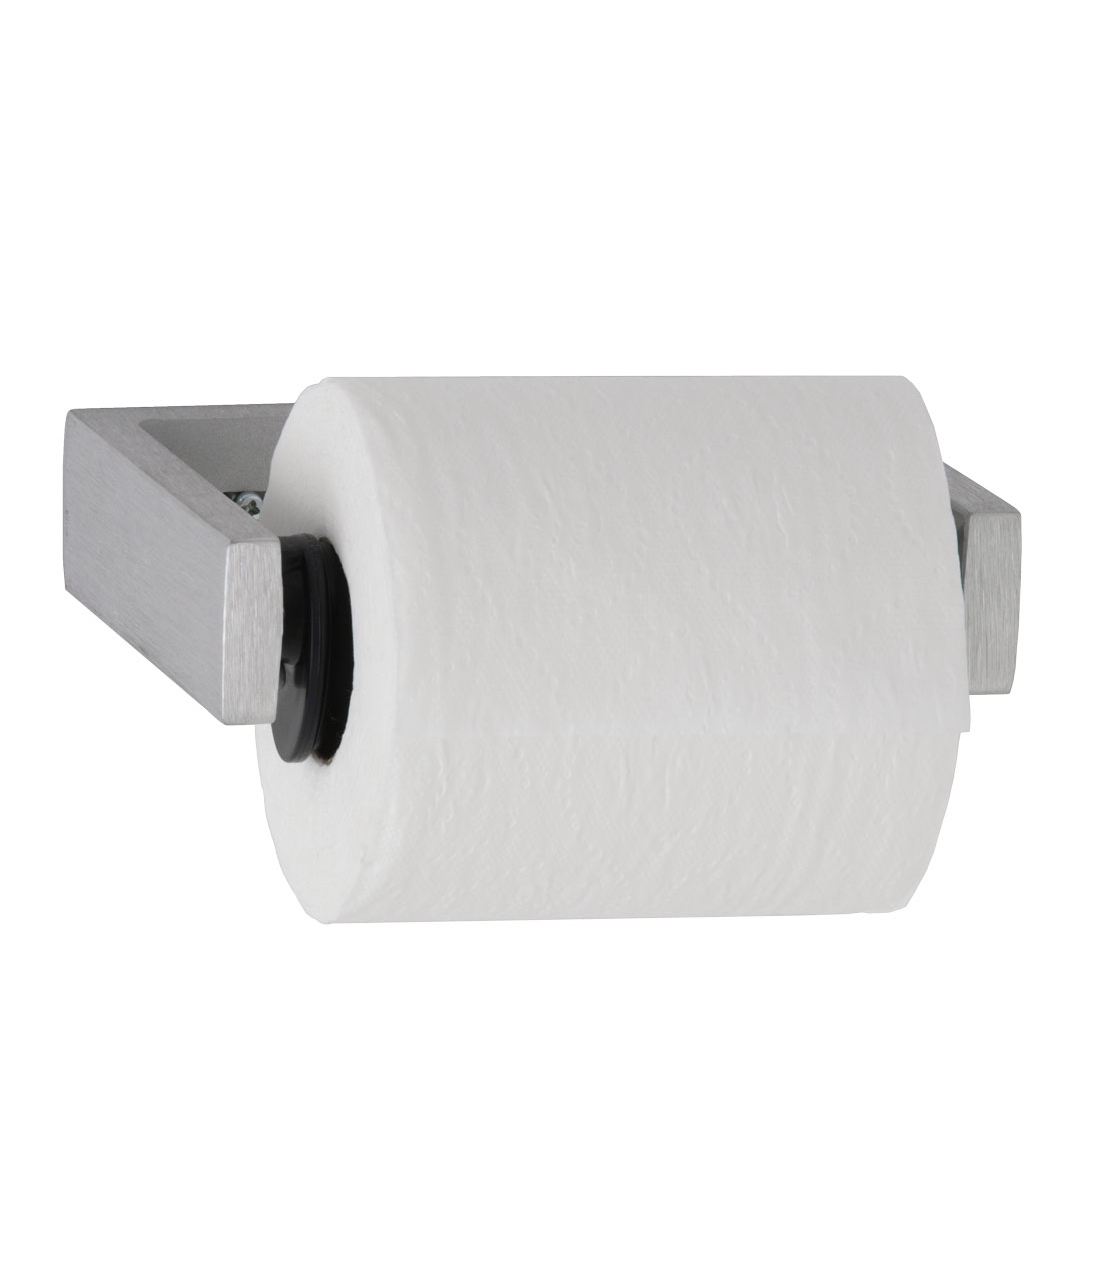 Bobrick B-273 Single-Roll Toilet Tissue Dispenser 